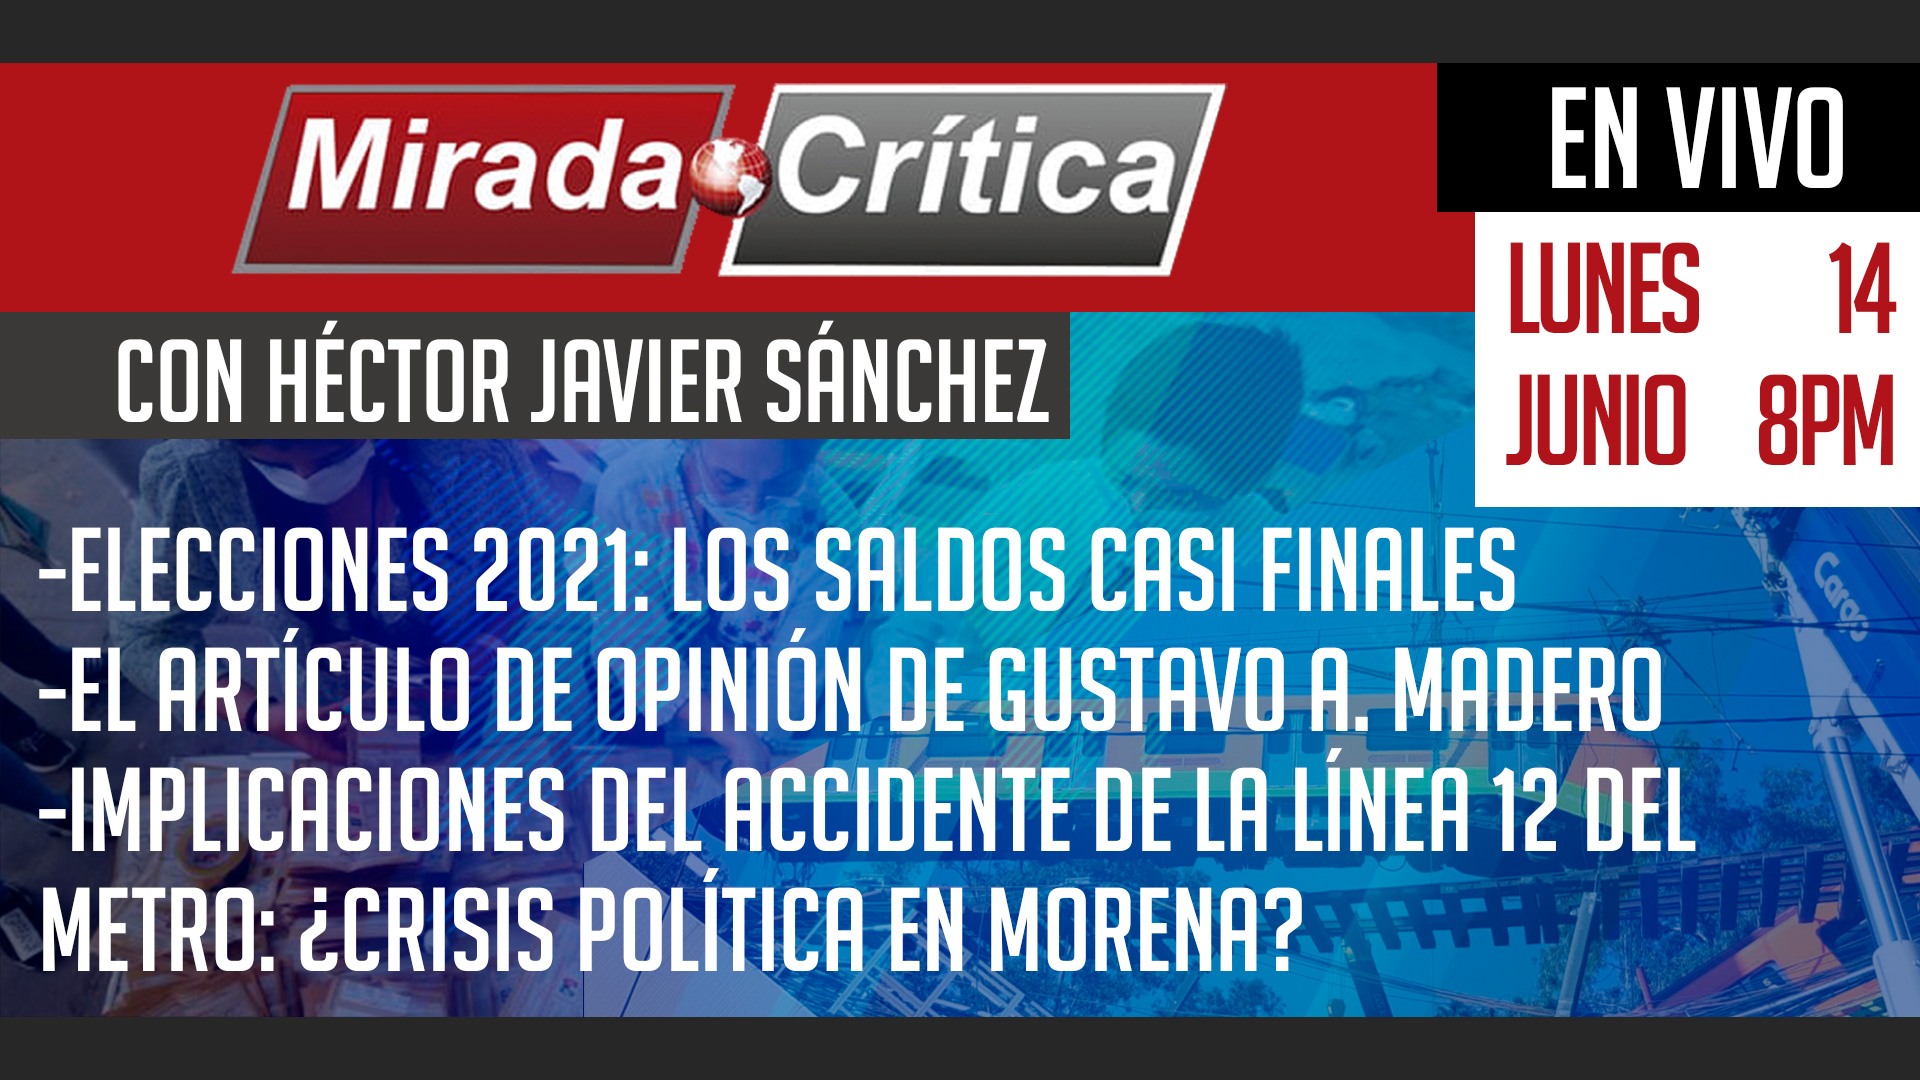 Elecciones 2021: los saldos casi finales / El artículo de opinión de Gustavo A. Madero - Mirada Crítica